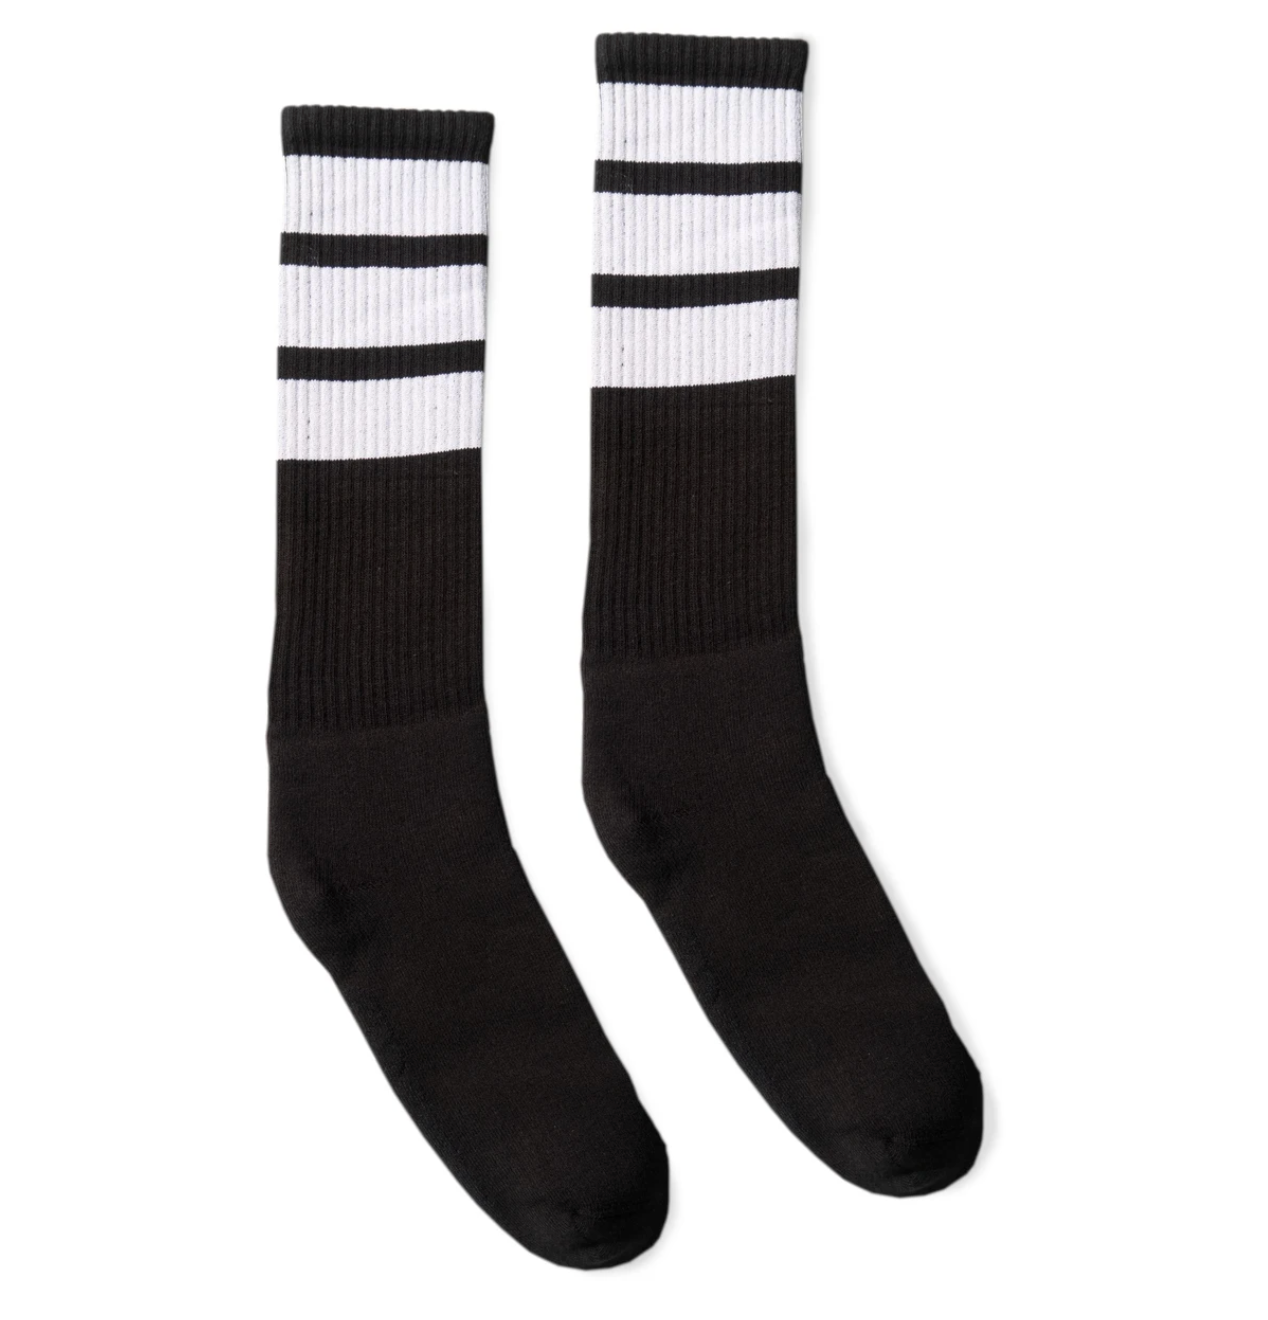 Socco Socks